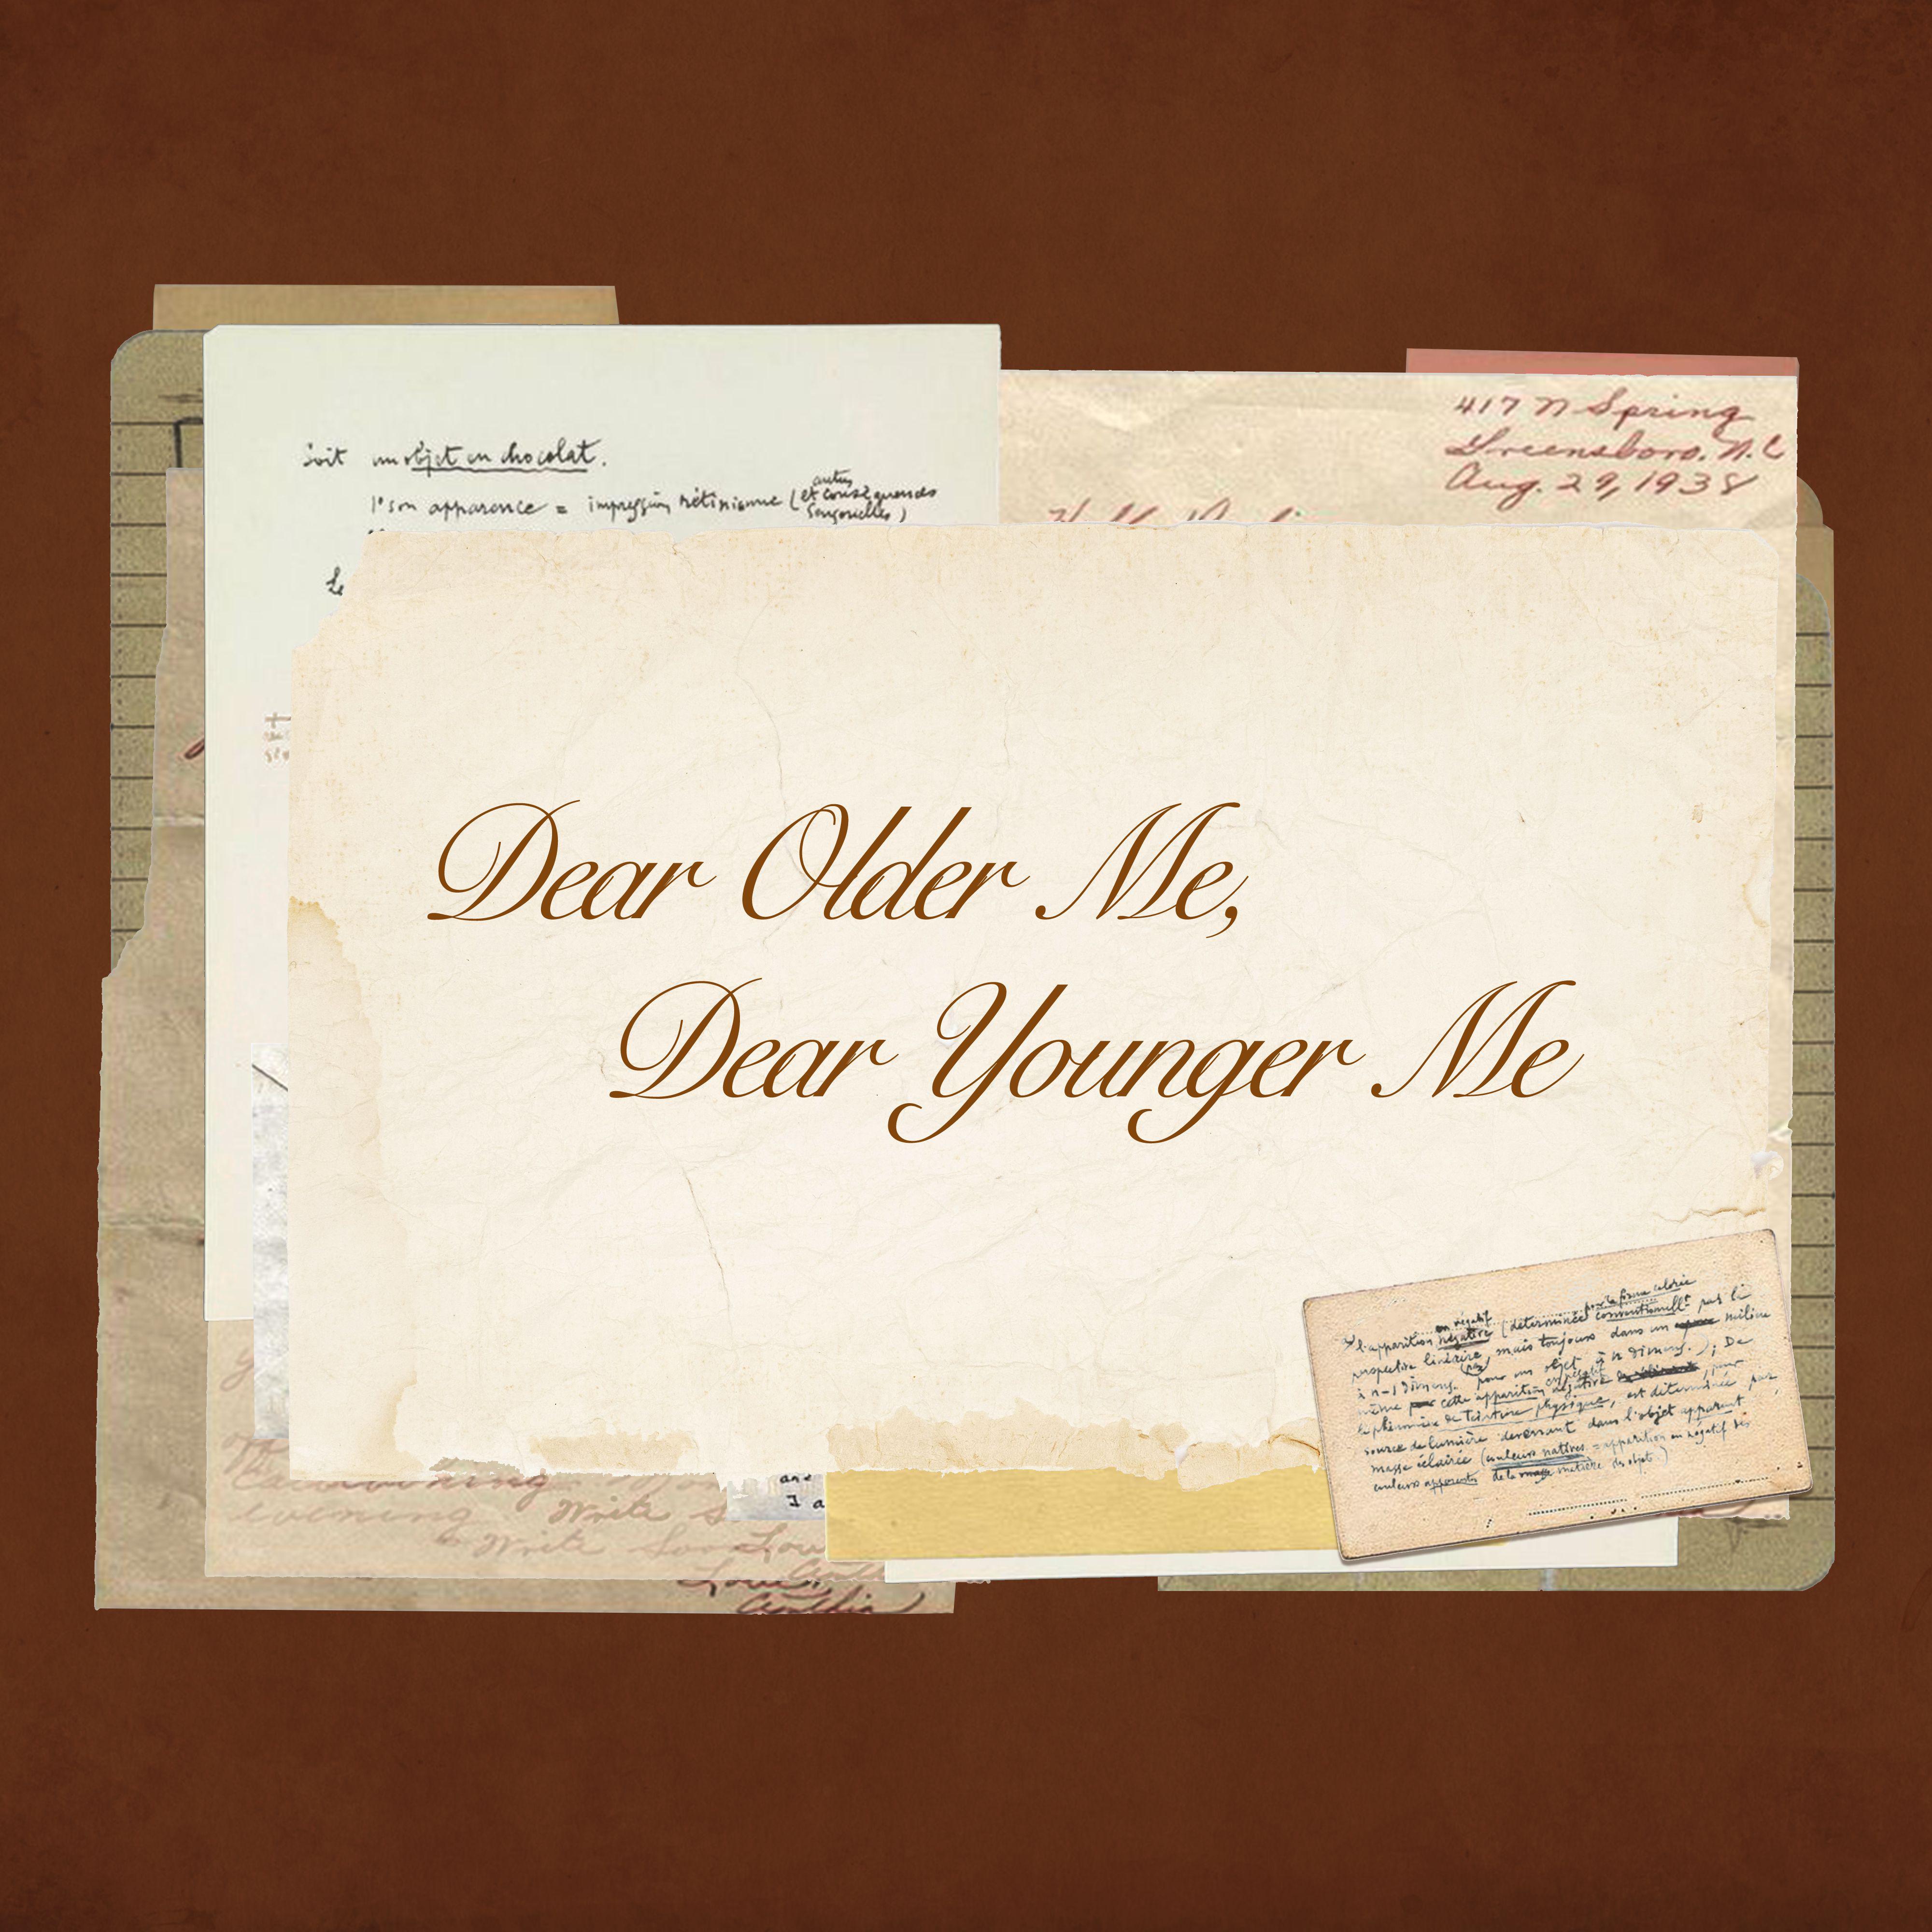 Dear Older Me, Dear Younger Me专辑